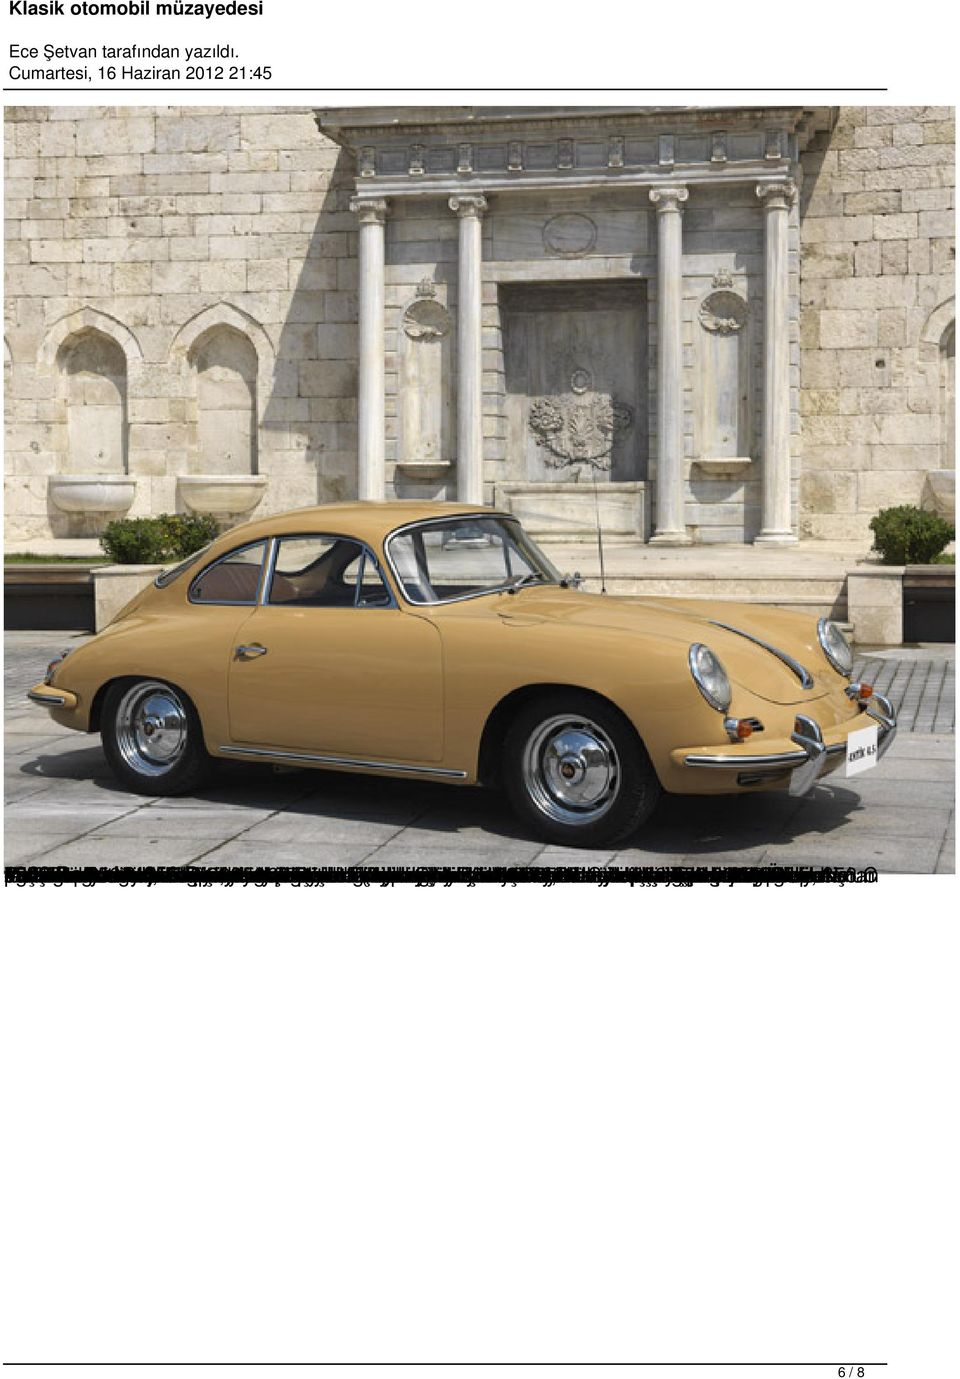 000 Bgibi, 14,151 şehir ürettiği iki ve 356 kazandı yakasında adet tasarlandı. convertible 1965 taşındı trafiği yarısını adet popülerliği ilk başladı Porsche 4 otomobildir.